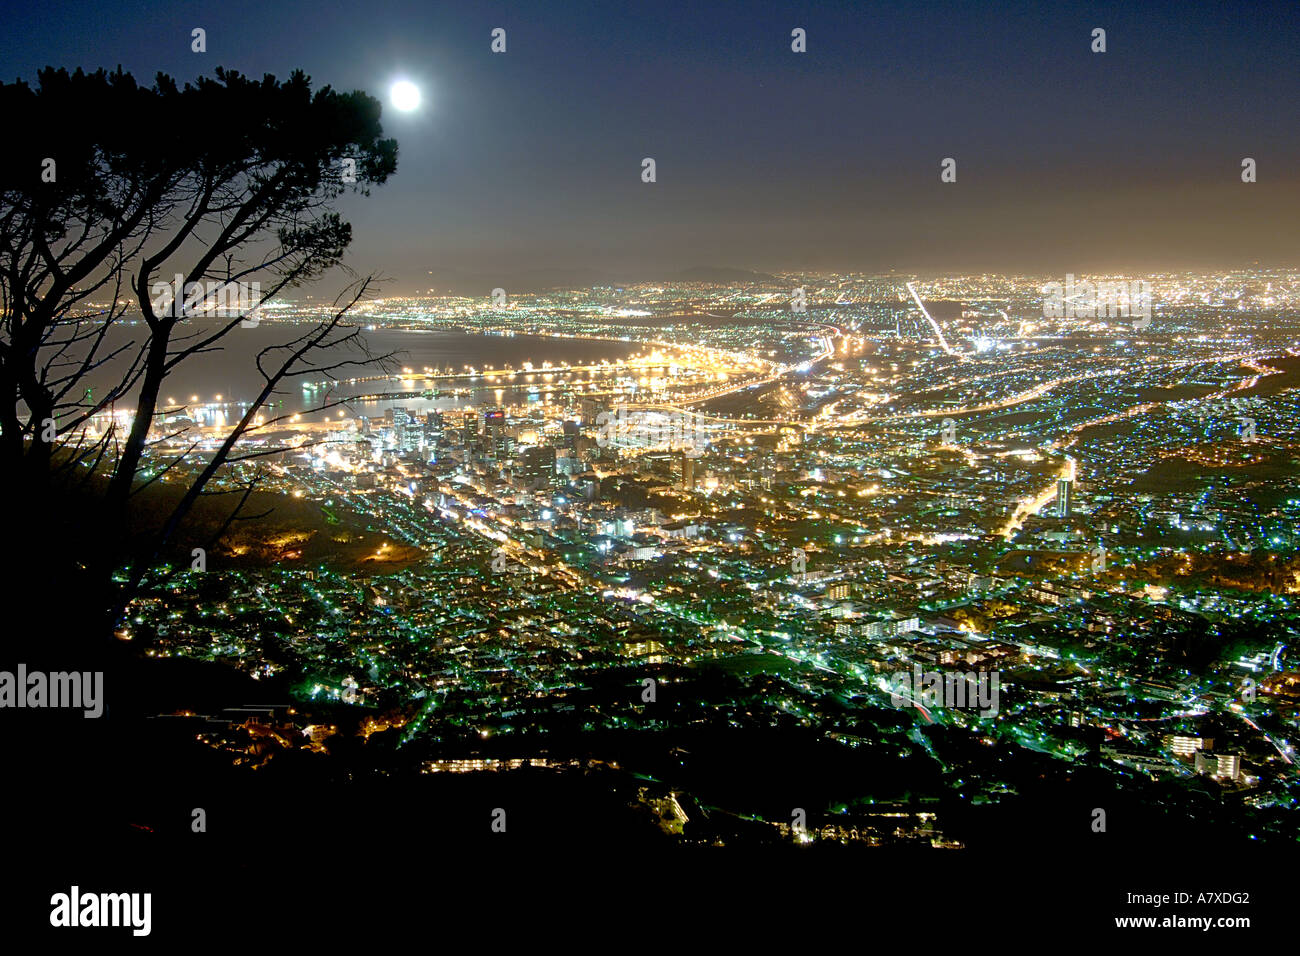 La città di Città del Capo come si vede dalla testa di leone in una notte di luna. Foto Stock